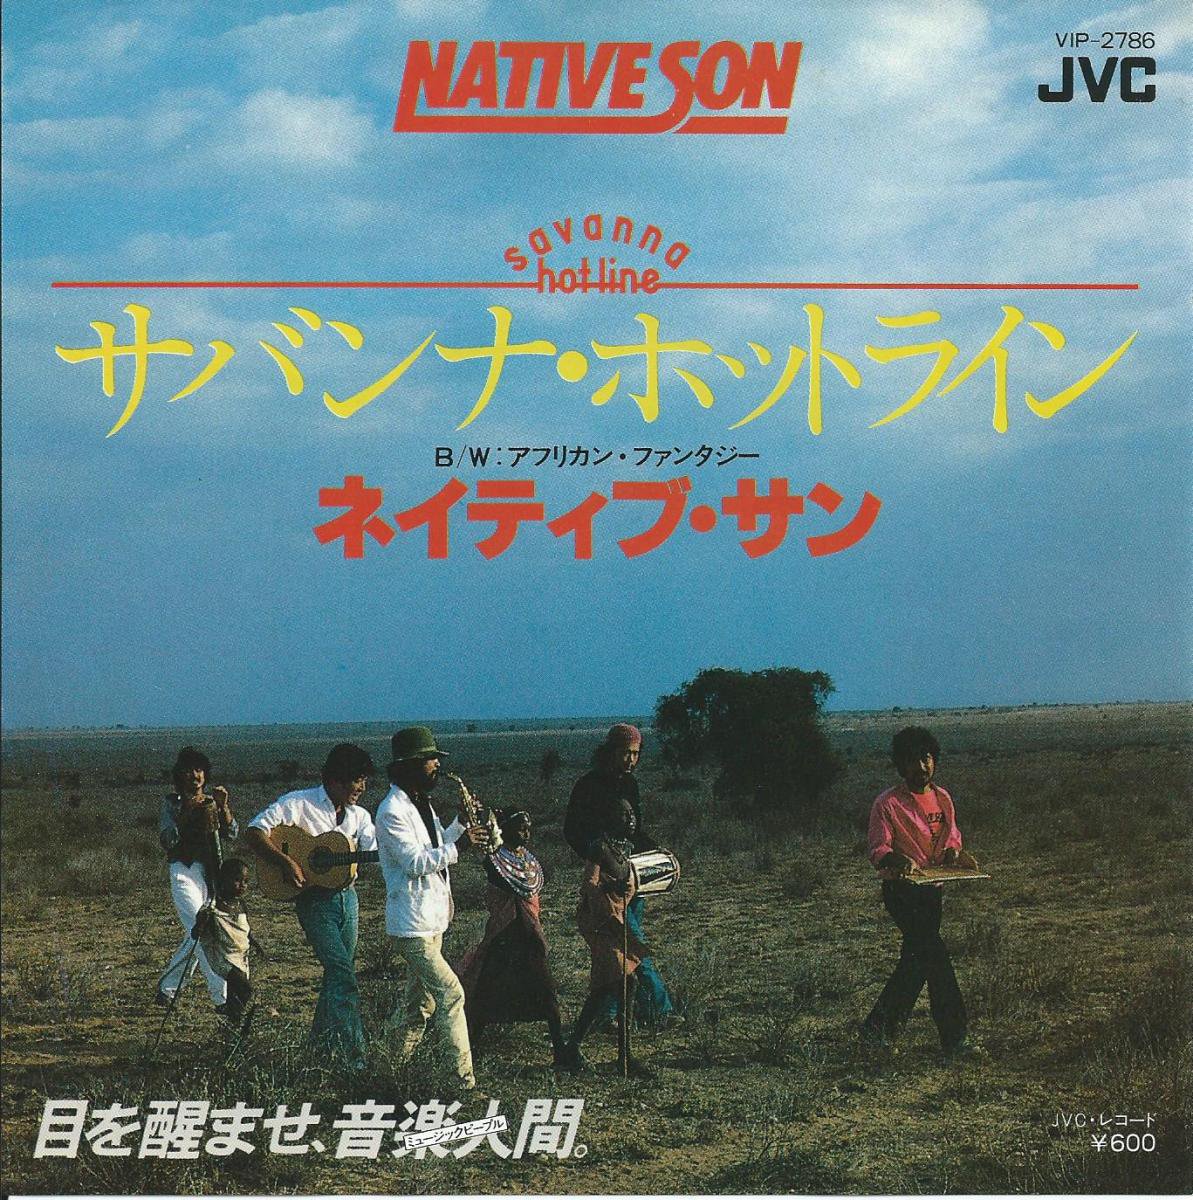 NATIVE SON ネイティブ・サン / サバンナ・ホットライン SAVANNA HOT LINE (7